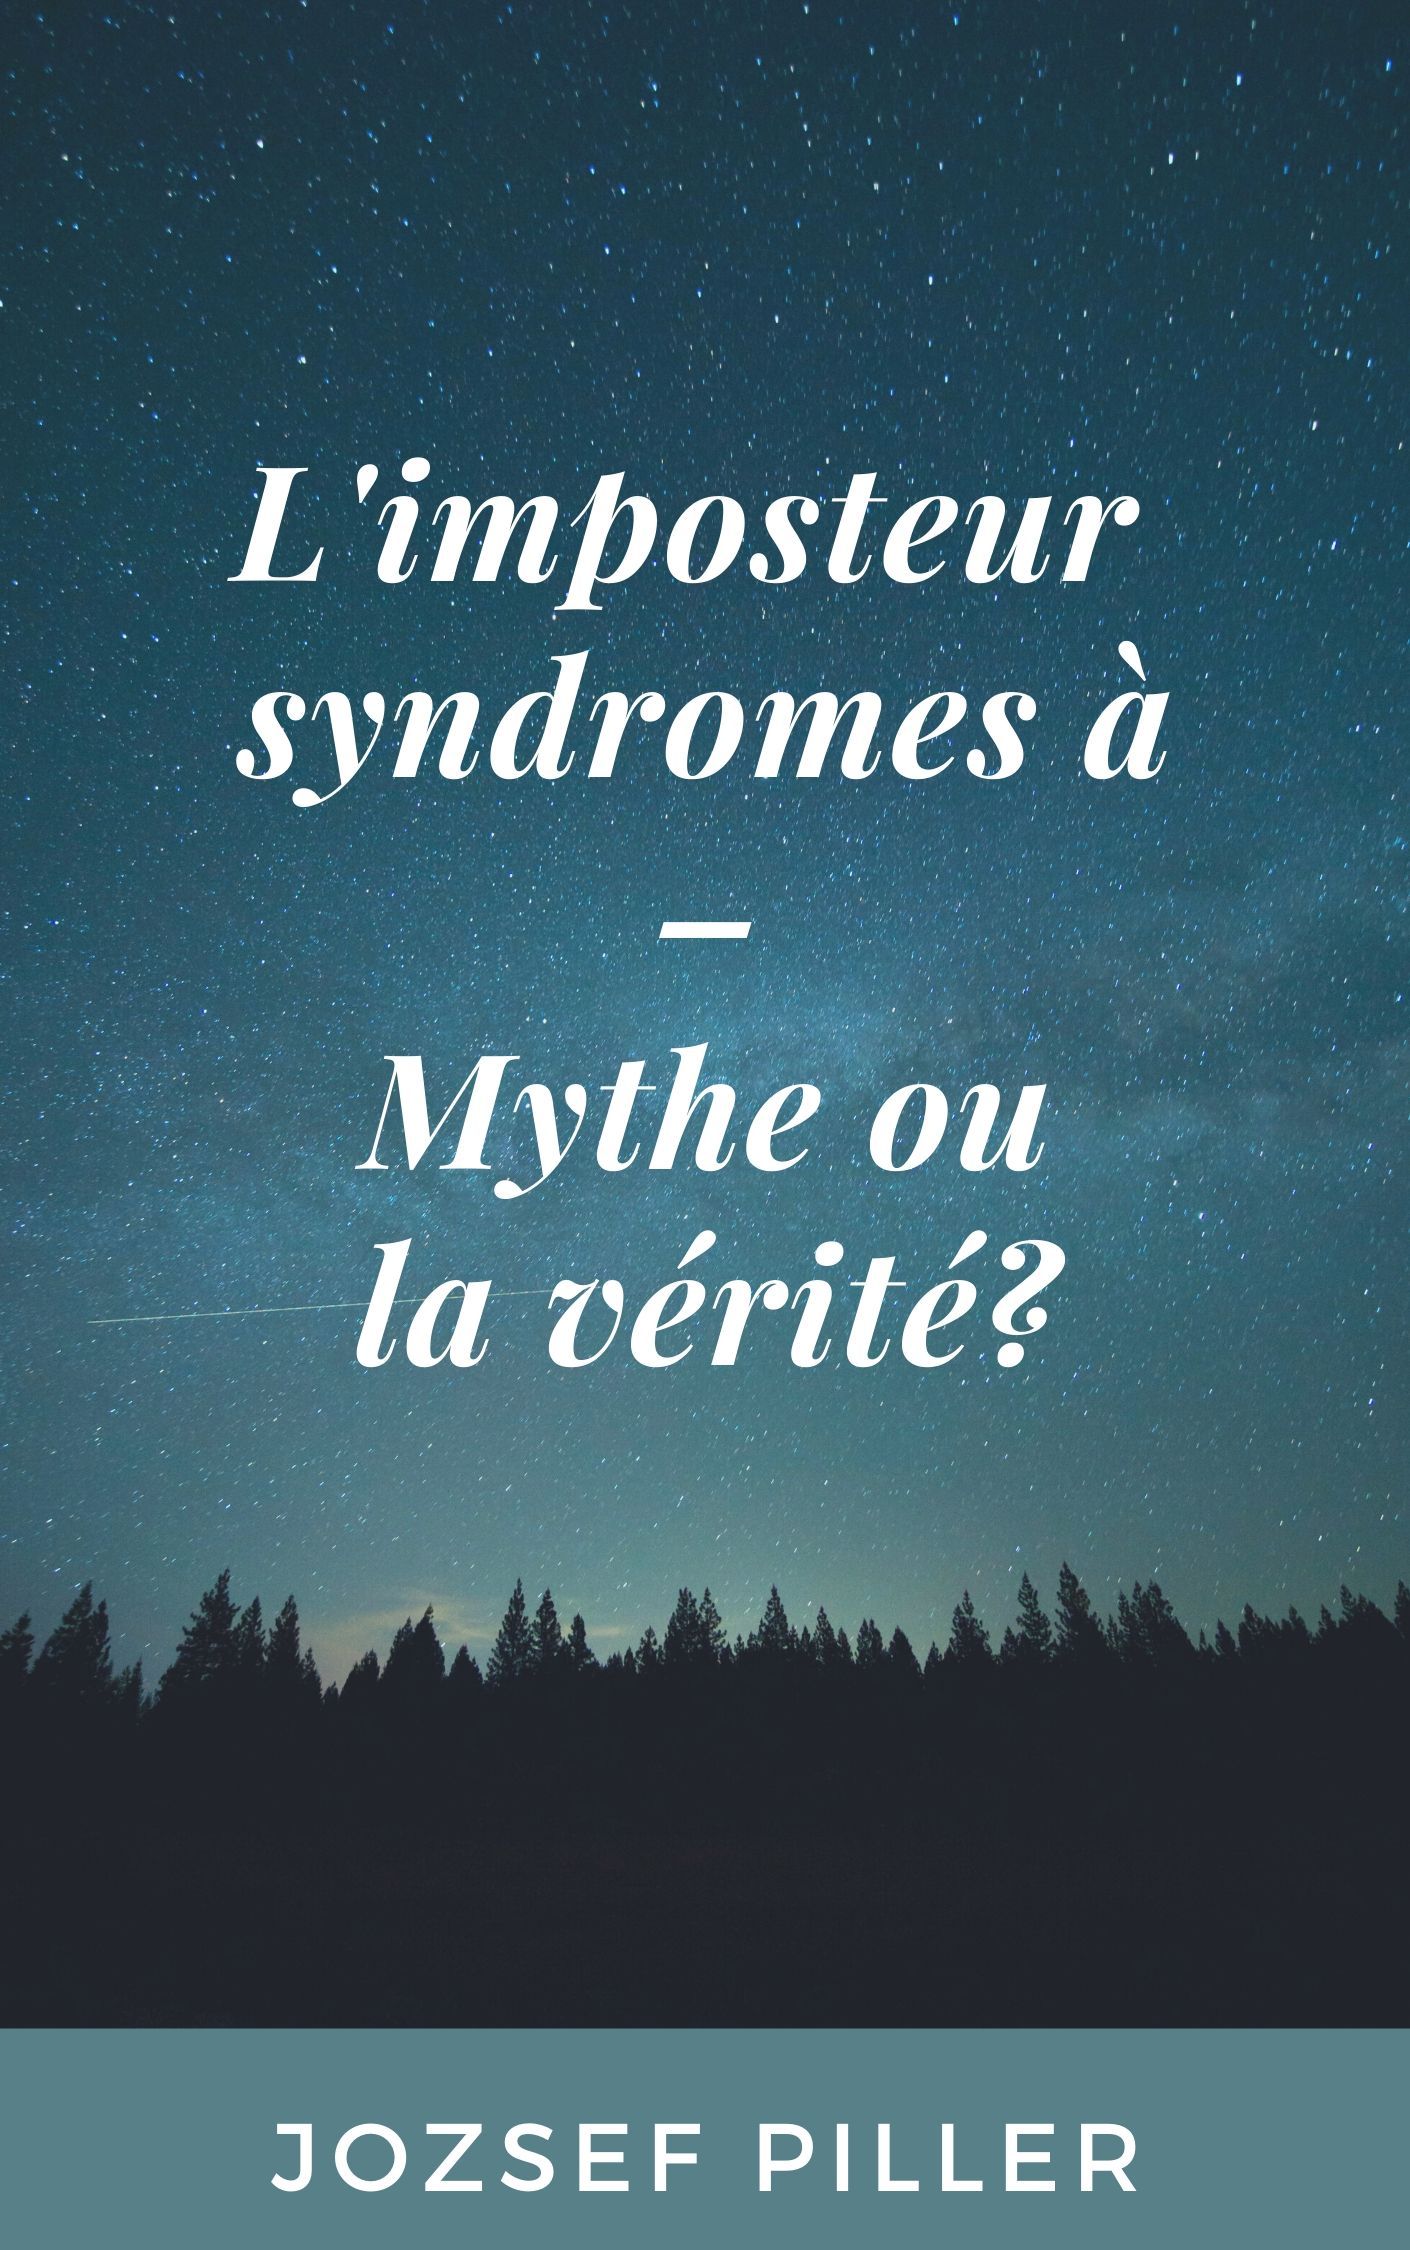 L'imposteur syndromes à - Mythe ou la vérité?, eBook by Jozsef Piller